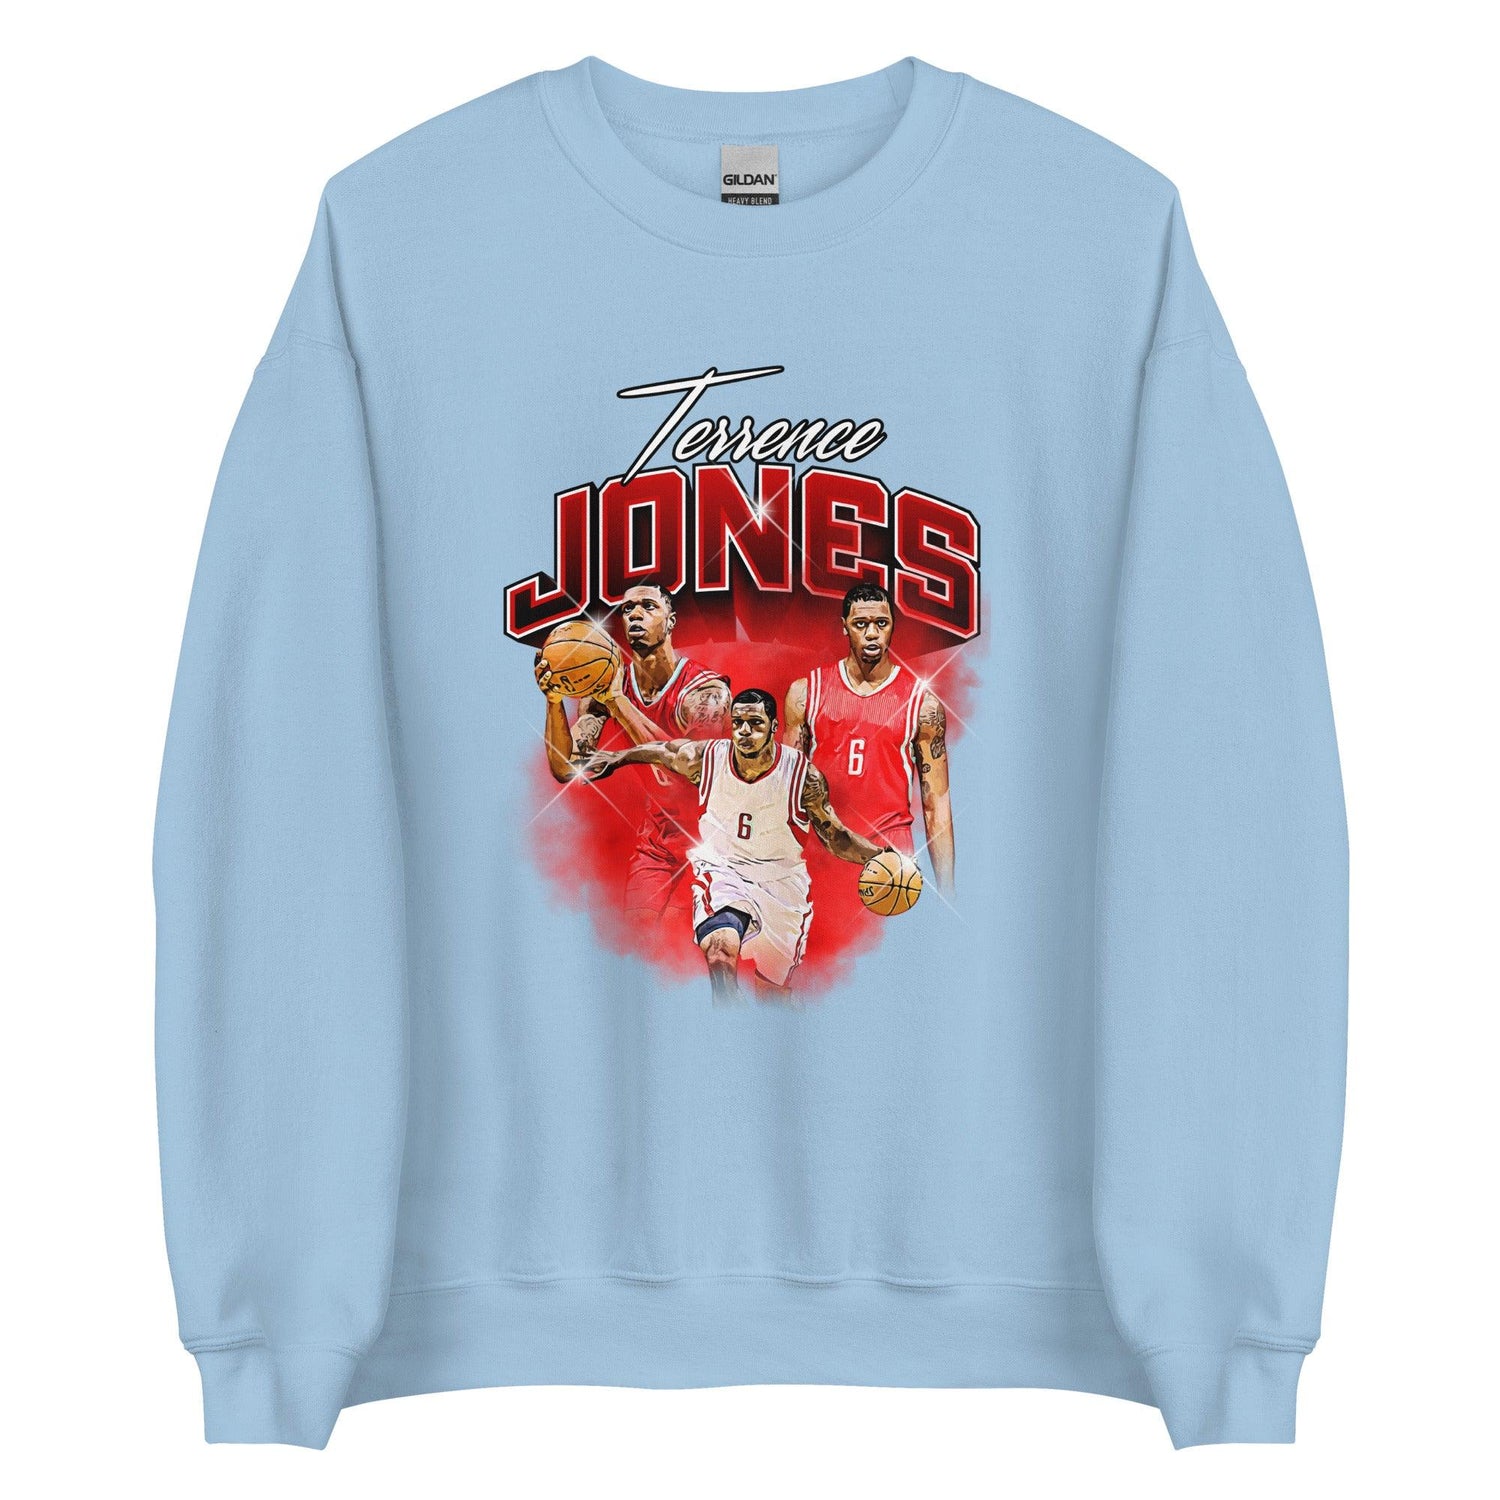 Terrence Jones "Legacy" Sweatshirt - Fan Arch